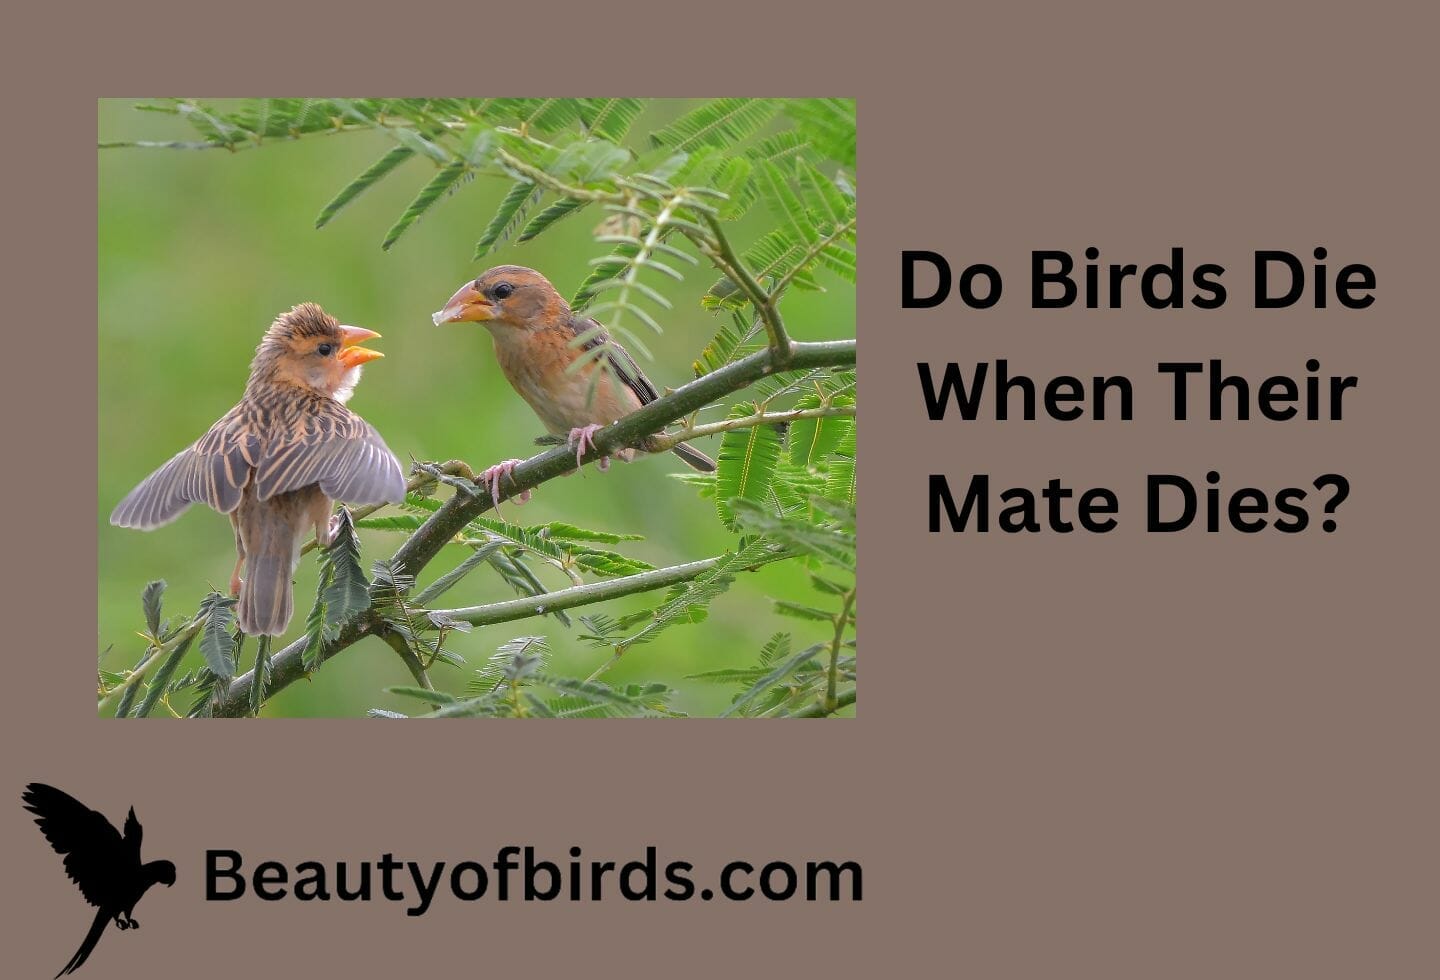 Do Birds Die When Their Mate Dies